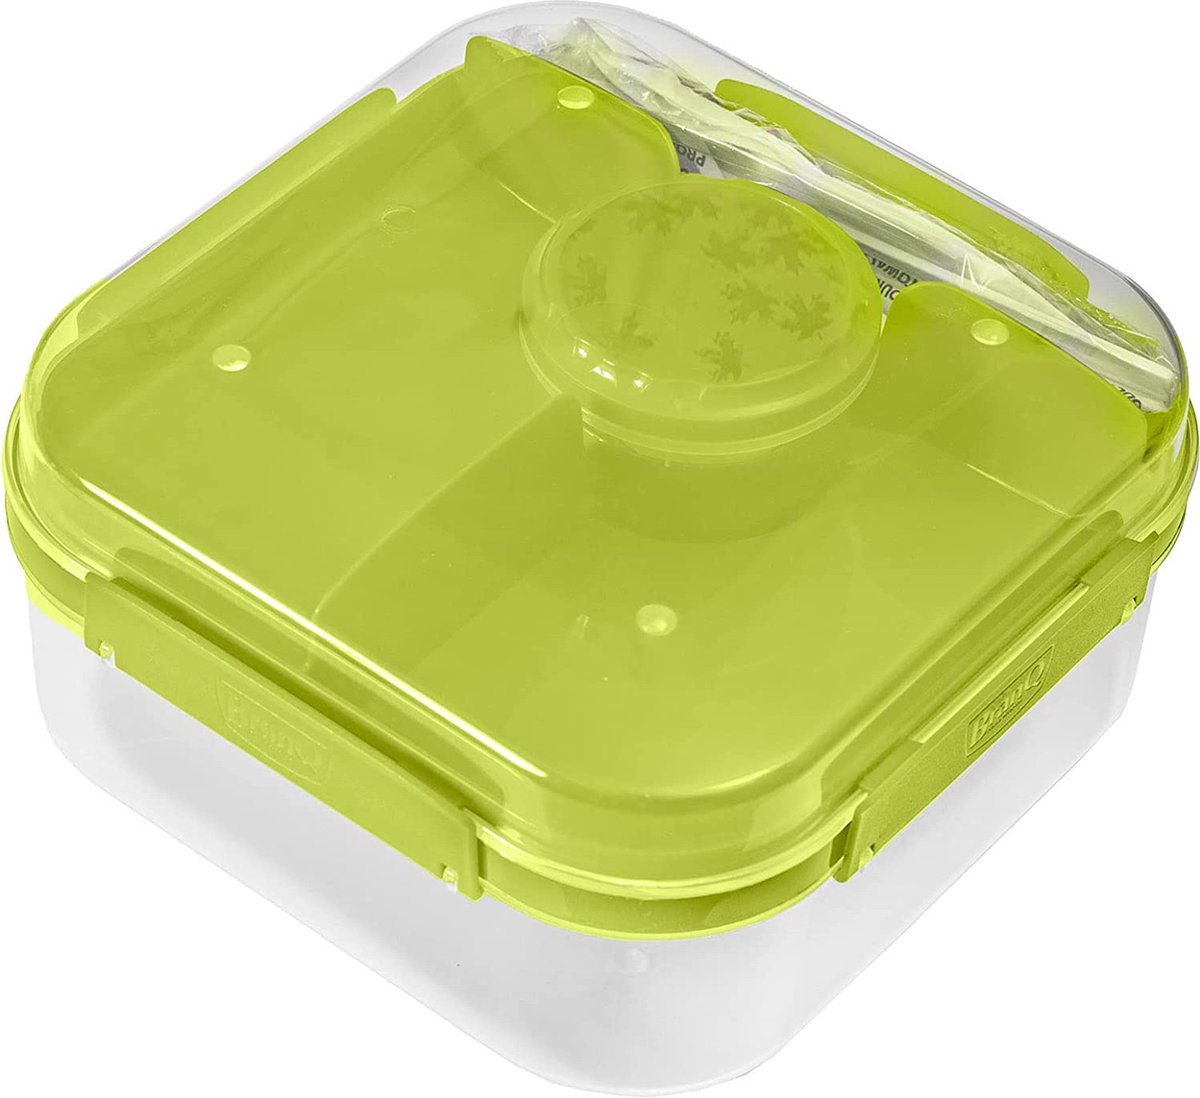 Branq Lido - Lunchbox / Ontbijtbox - 1,6L - Groen